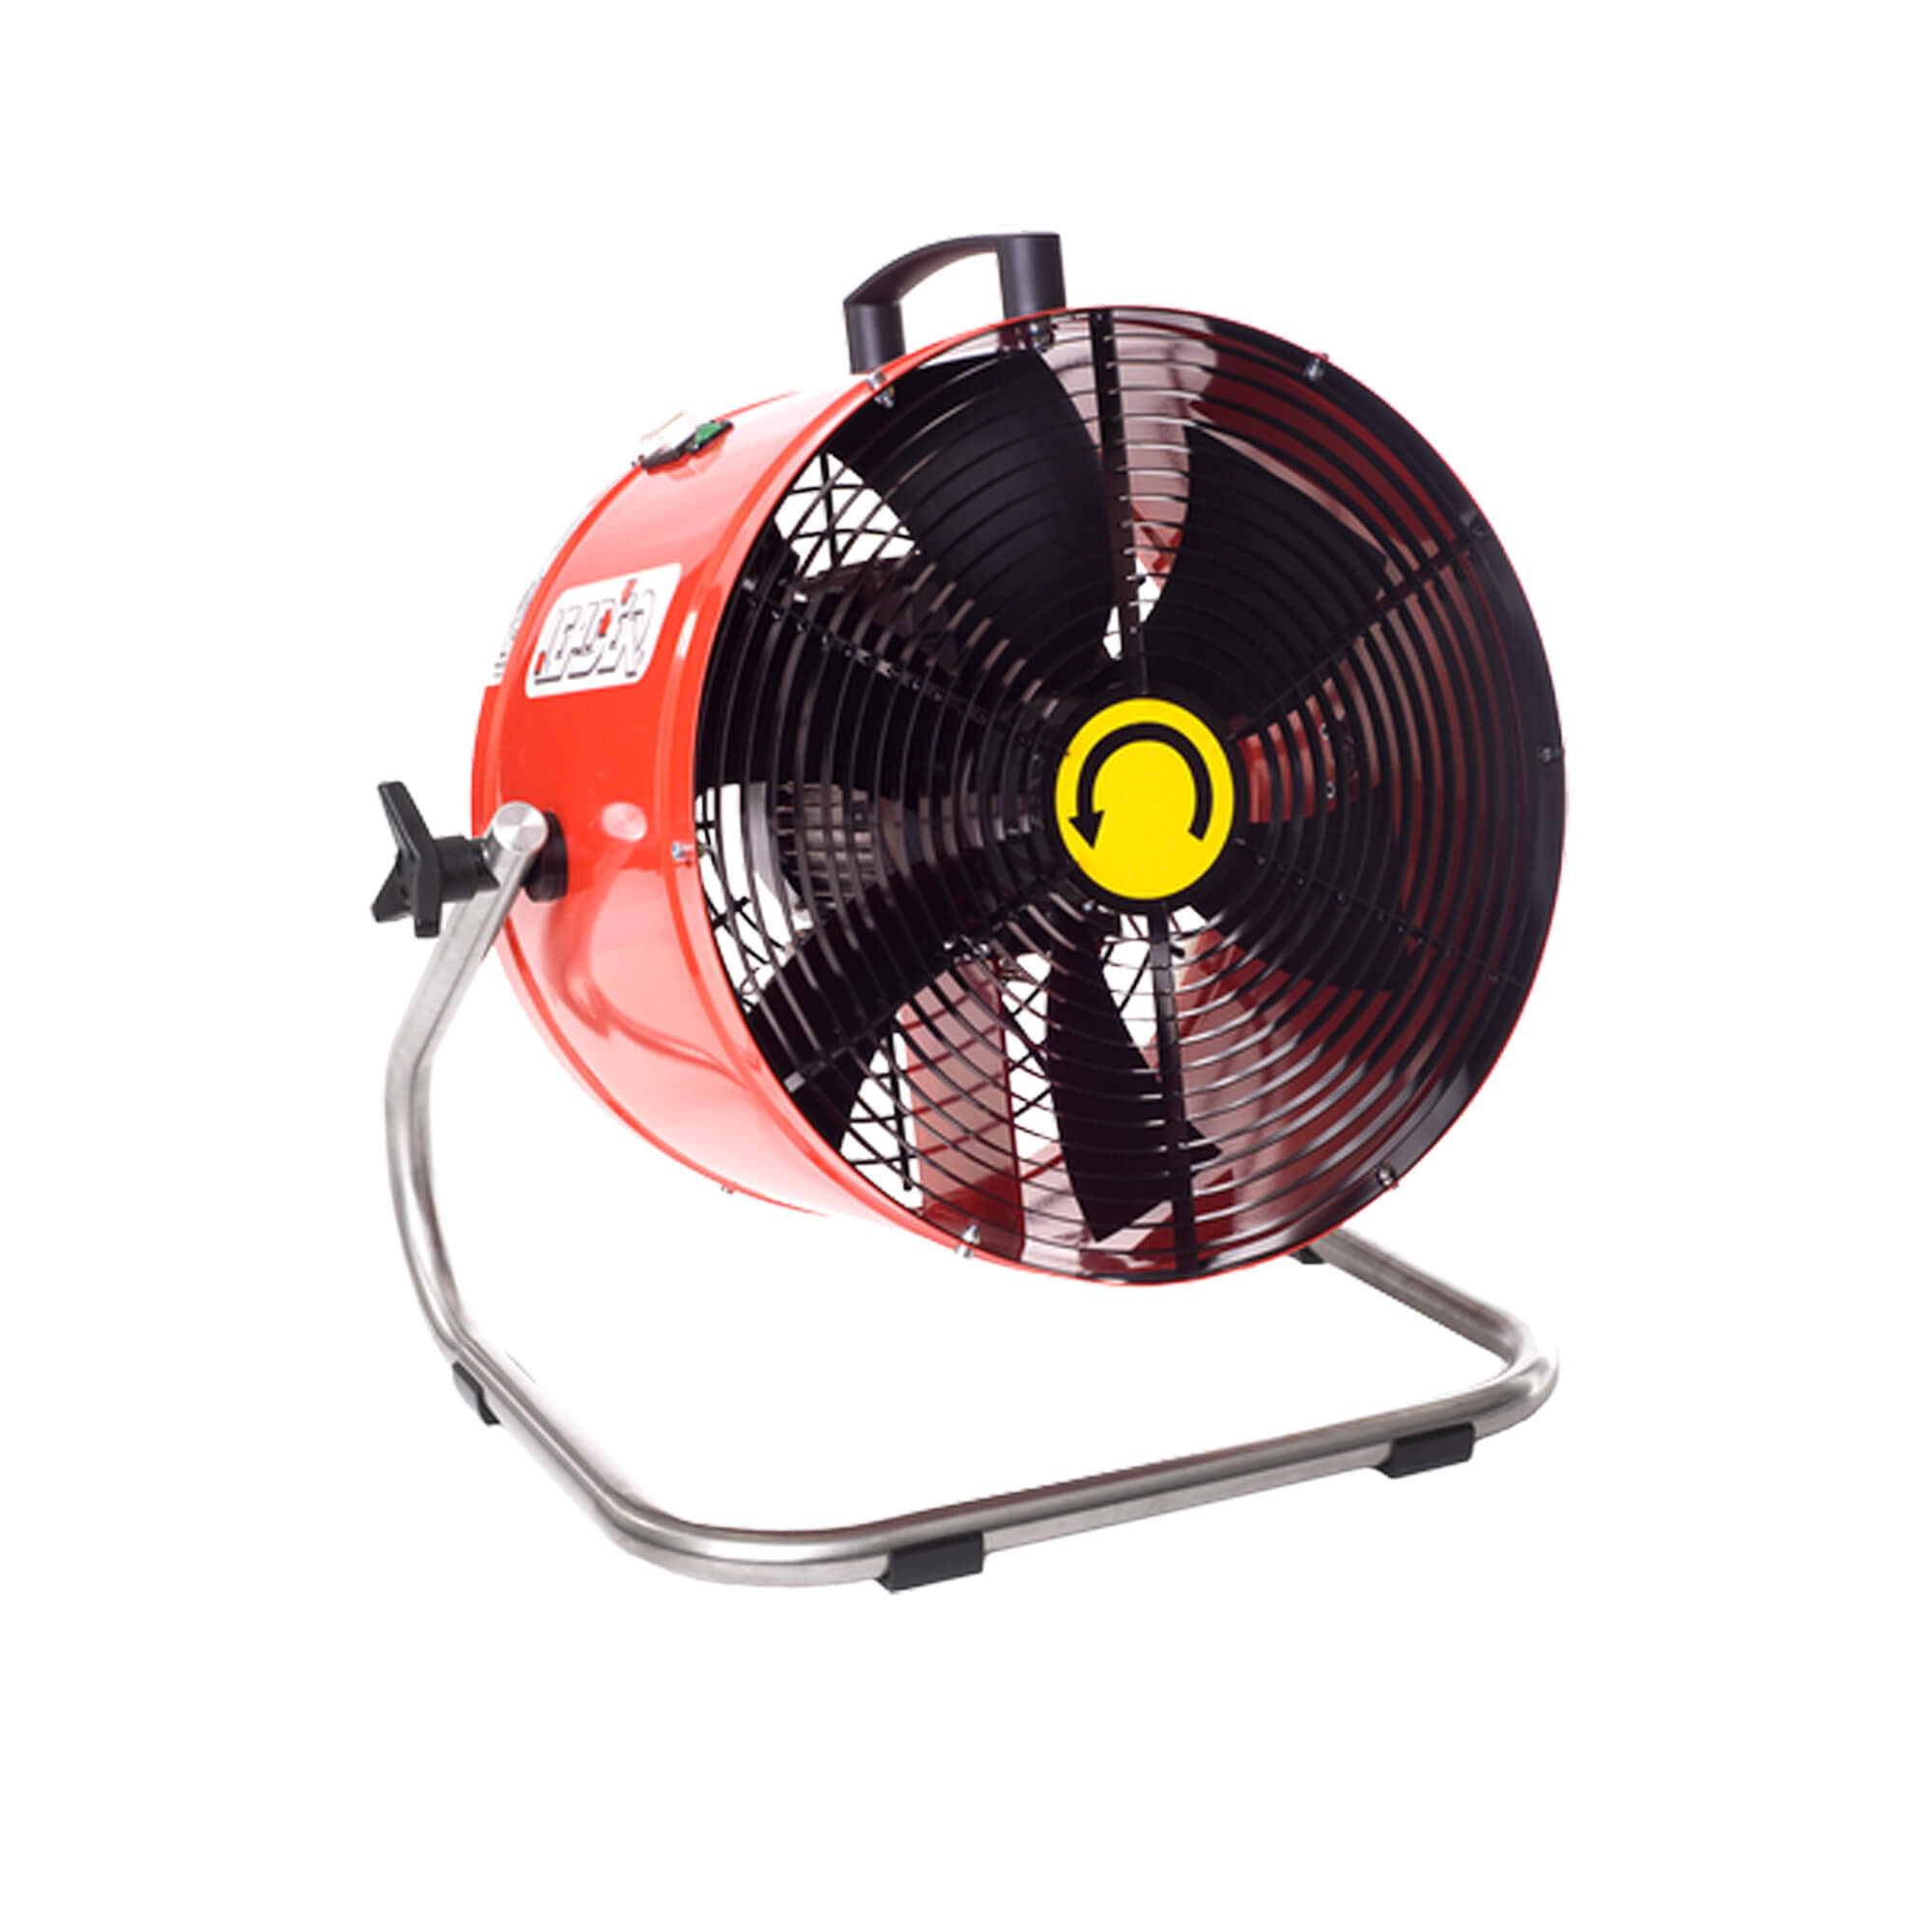 Electric fan SR460 - 13,000 m³/h